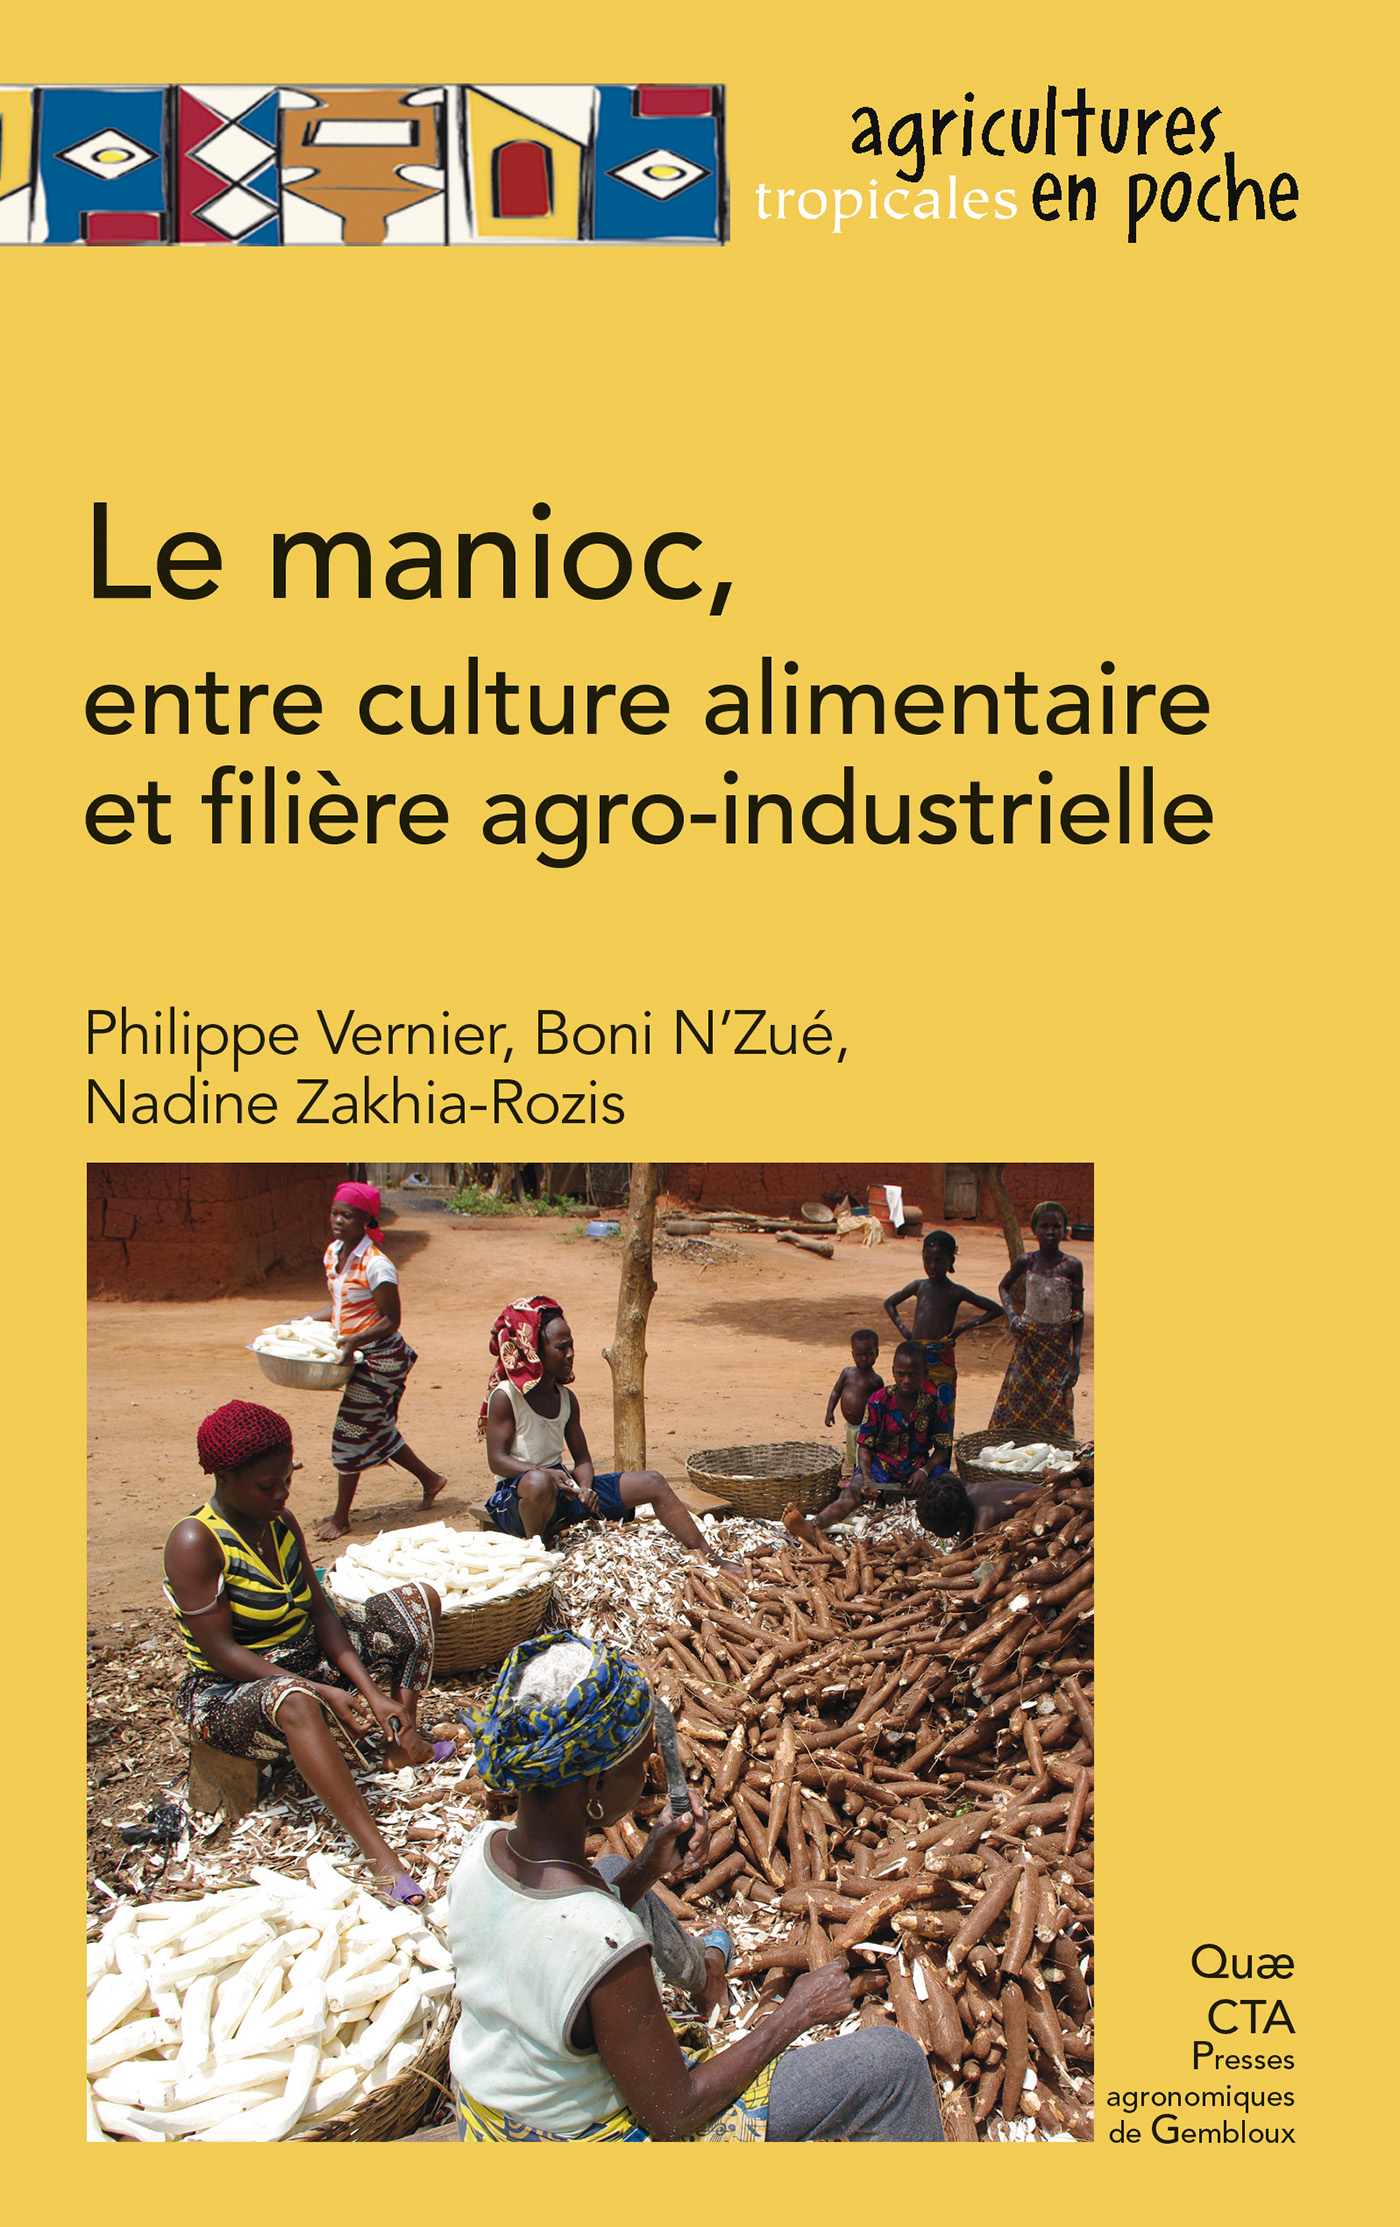 Le manioc, entre culture alimentaire et filière agro-industrielle De Philippe Vernier, Boni N’Zué et Nadine Zakhia-Rozis - Quæ